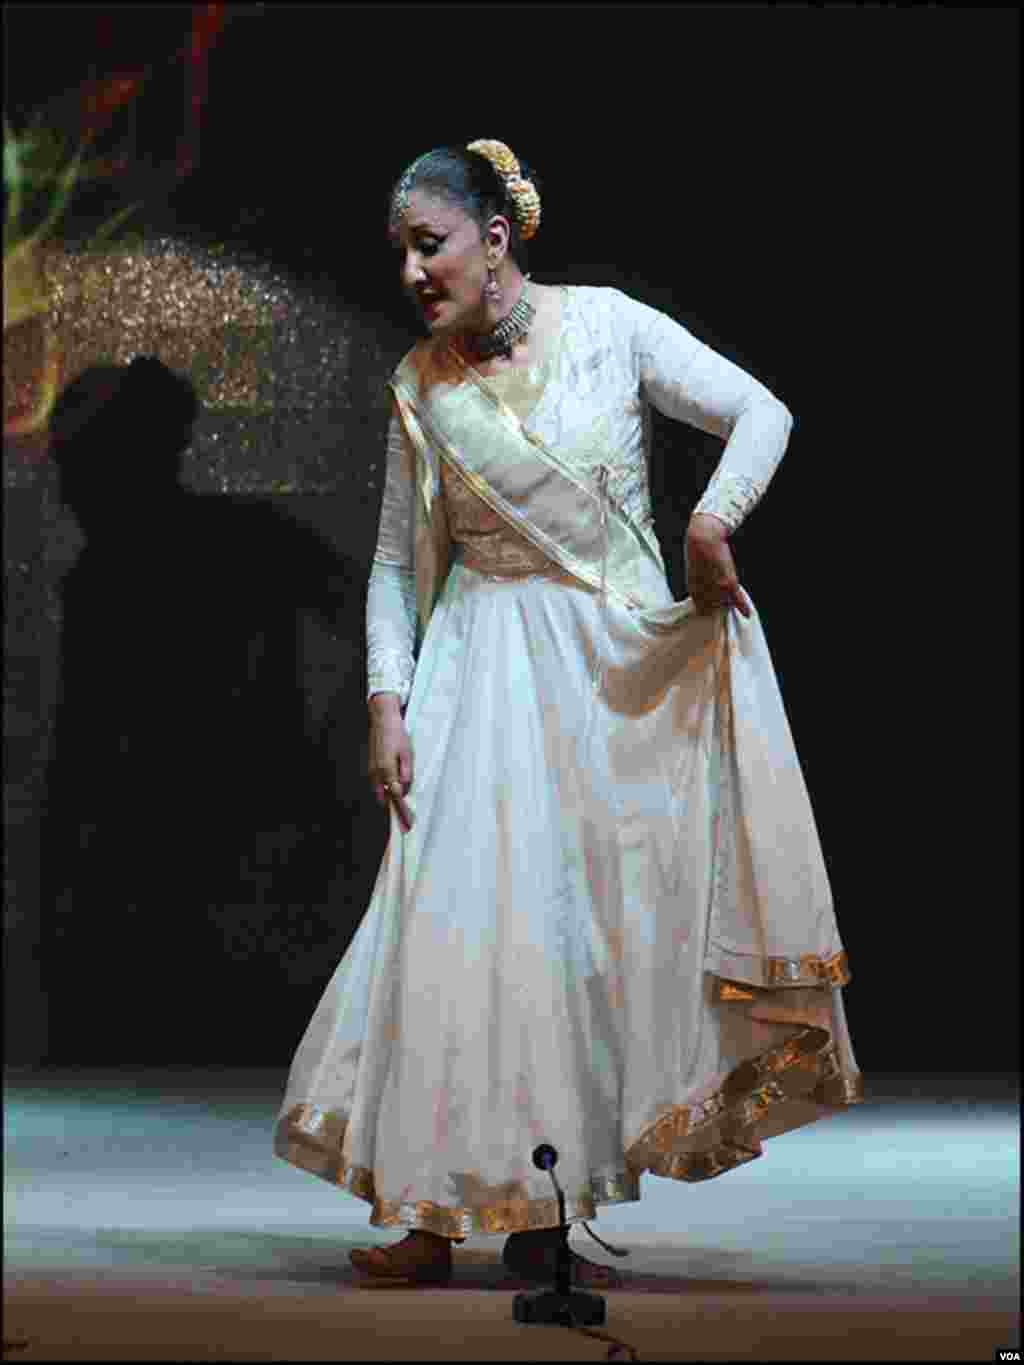 ادبی میلے کے پہلے روز معروف کلاسیکل رقاصہ نگہت چوہدری نے کتھک رقص پیش کیا